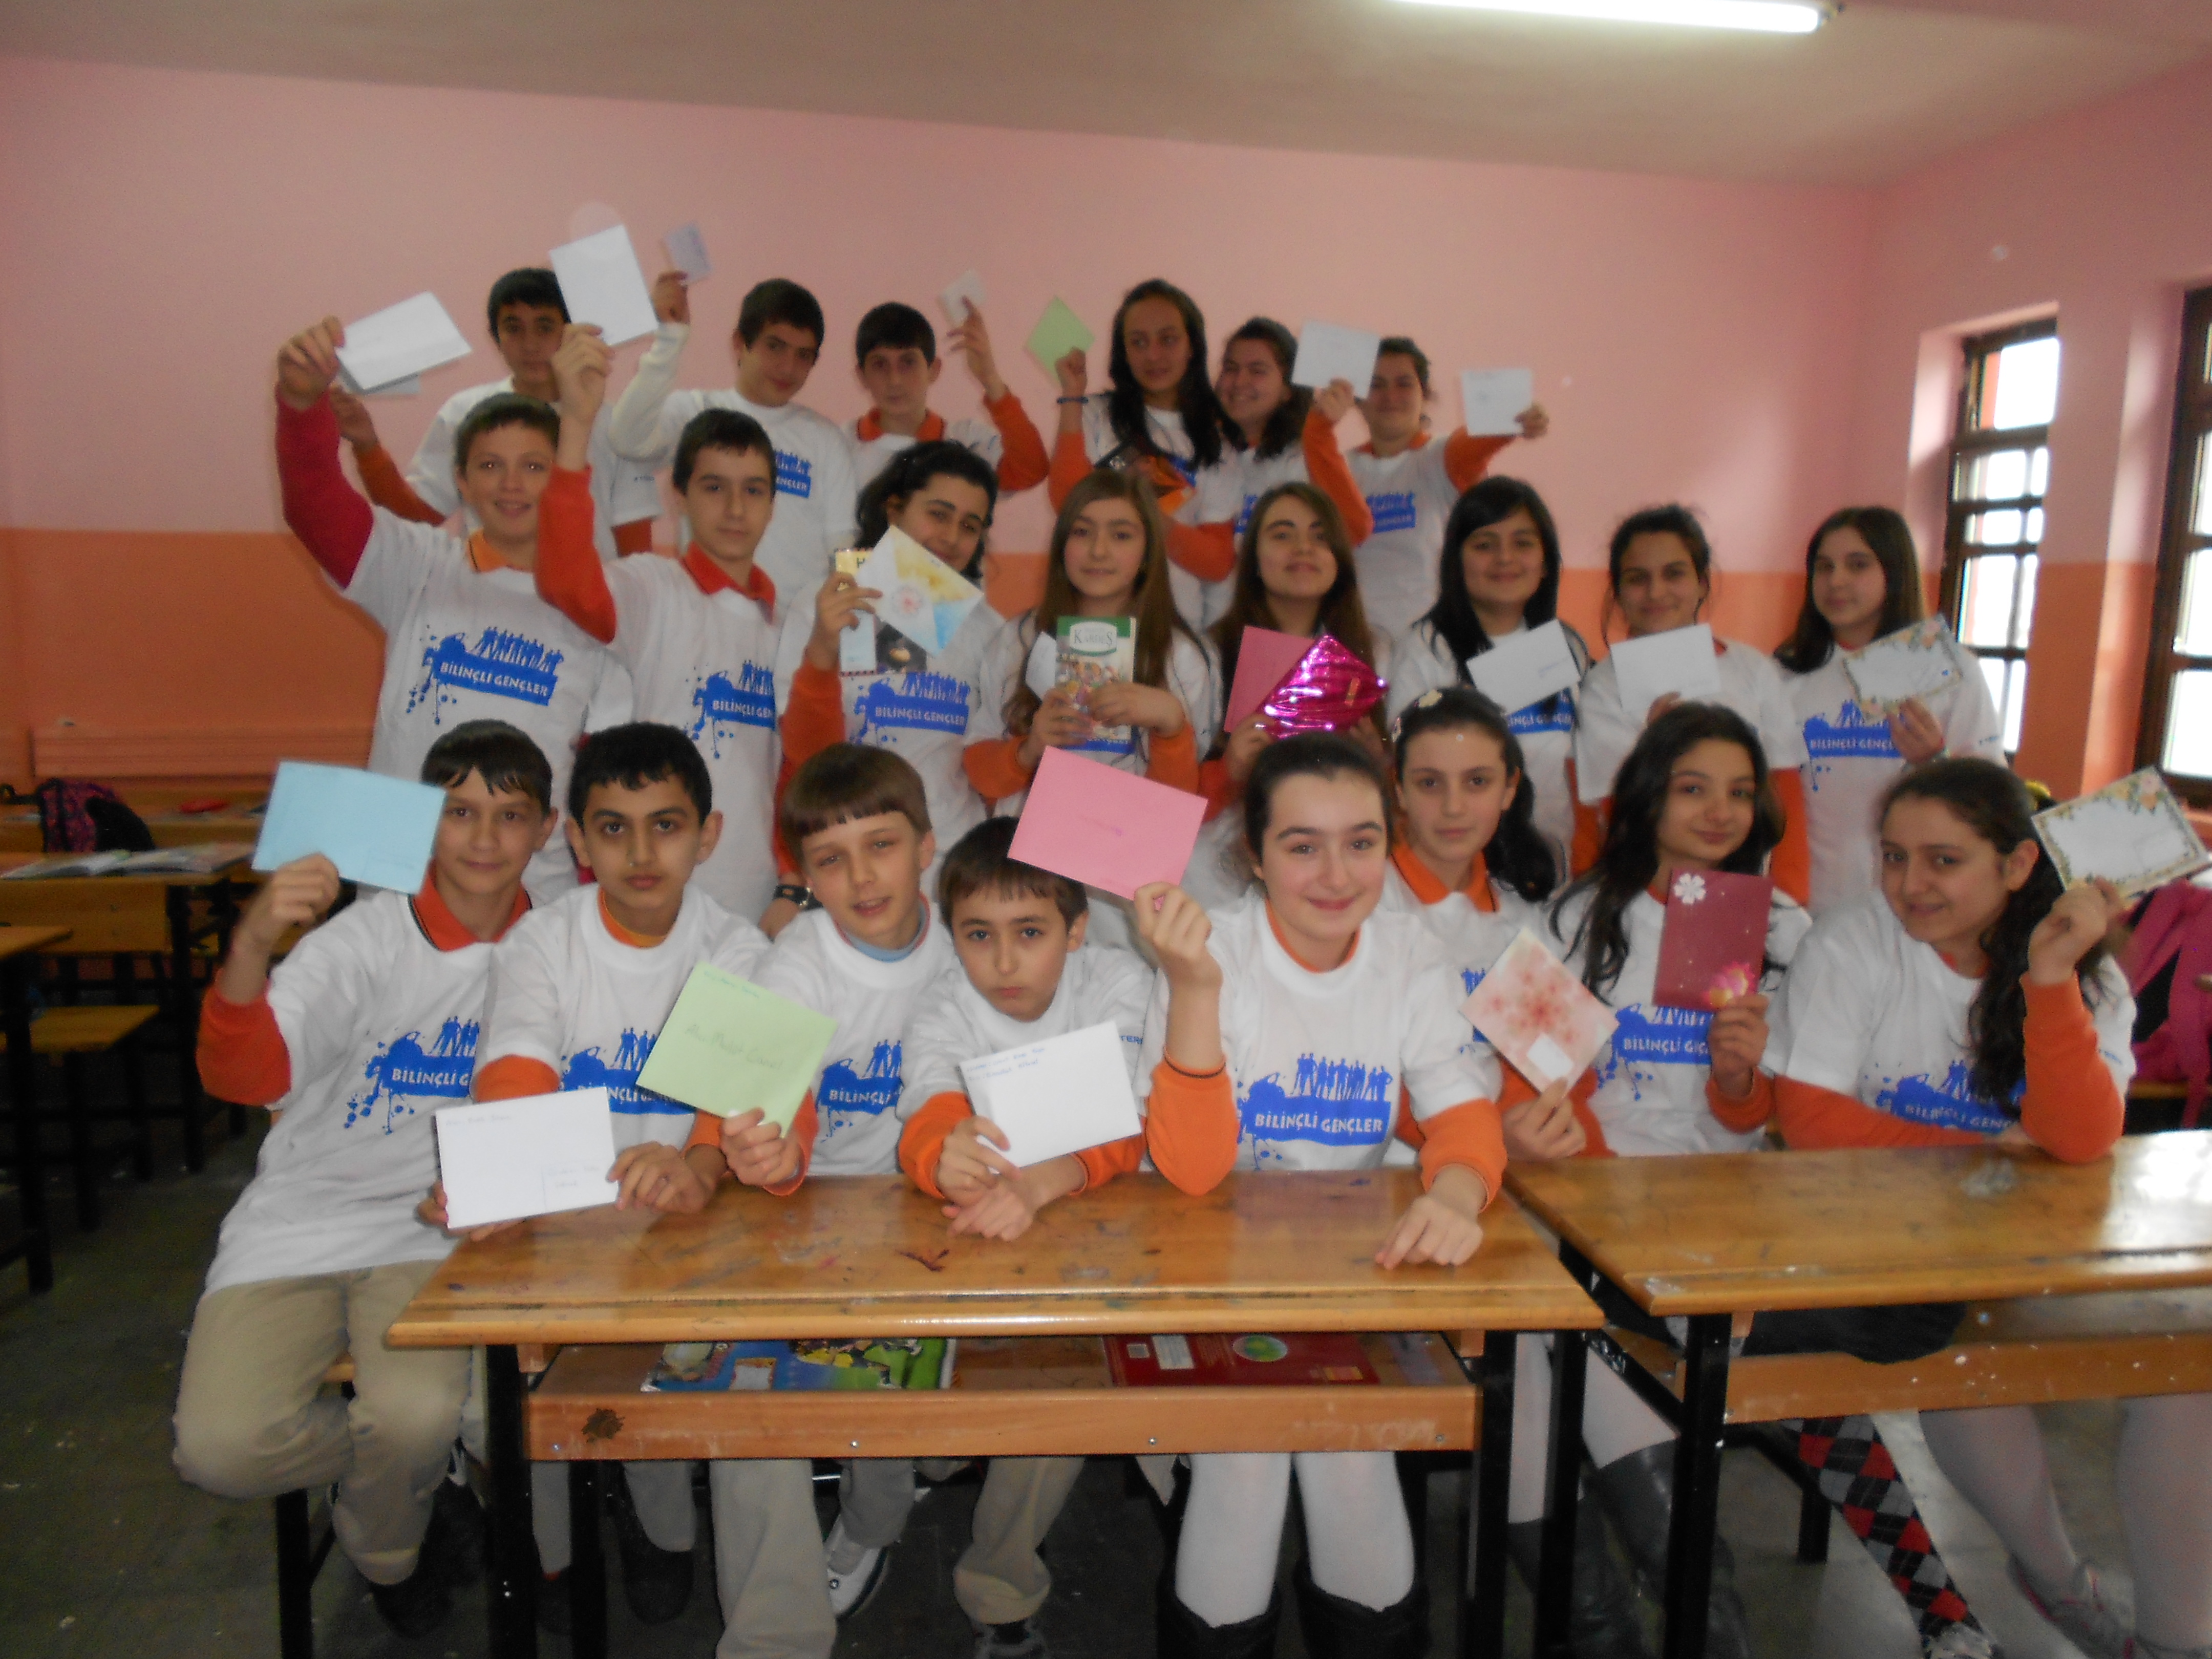 Bilinçli Gençler Derneği - Türkiye Bilinçli Gençlik Projesi - "MEKTUP ARKADAŞLIĞINDAN KİTAP ARKADAŞLIĞINA DOSTLUK KÖPRÜSÜ -3" - 23 Nisan İlköğretim Okulu - SAMSUN